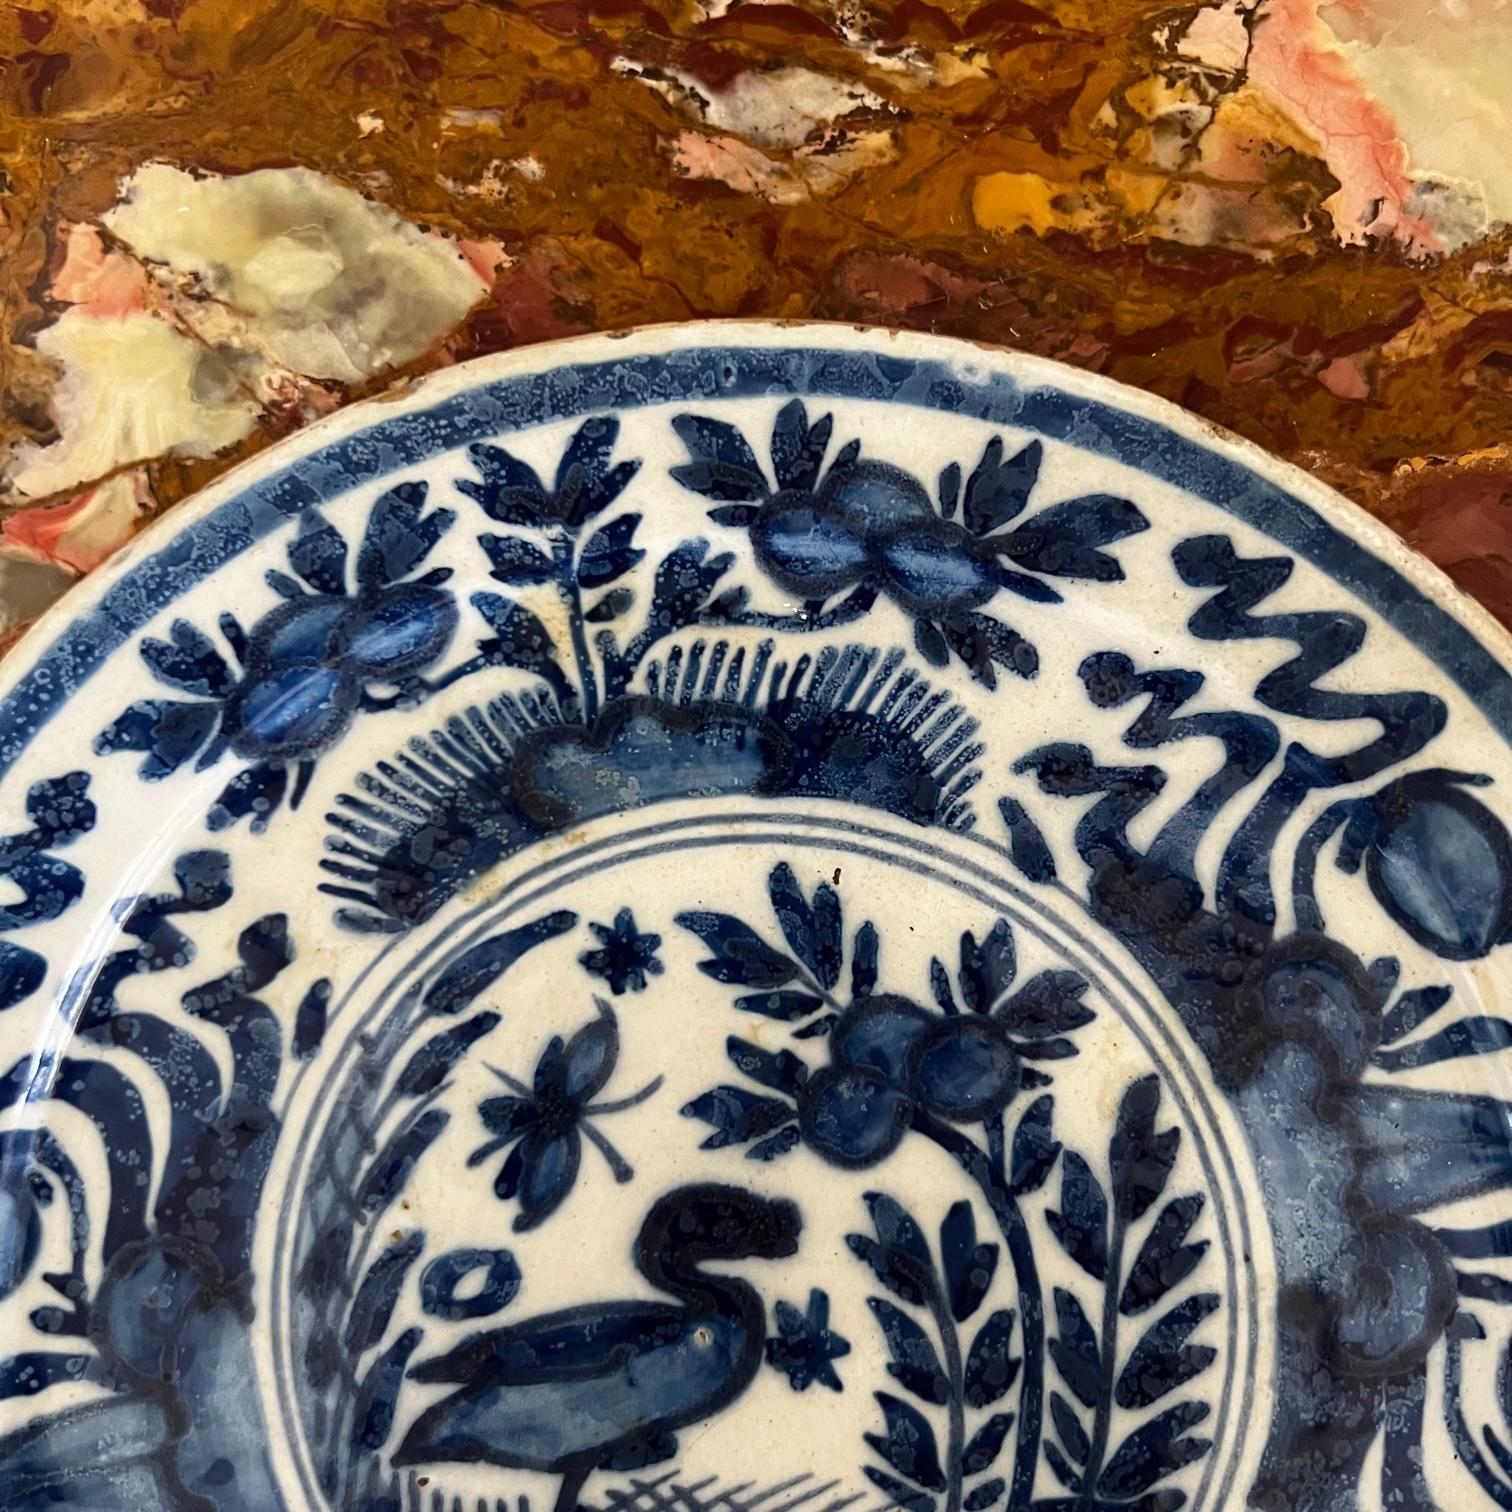 Assiette de cabinet en faïence hollandaise du 18e siècle. Poterie artisanale en terre cuite émaillée à la main, entièrement peinte à la main dans un décor floral bleu et blanc. Au centre, un oiseau avec des fleurs entourées d'arbres. Origine :